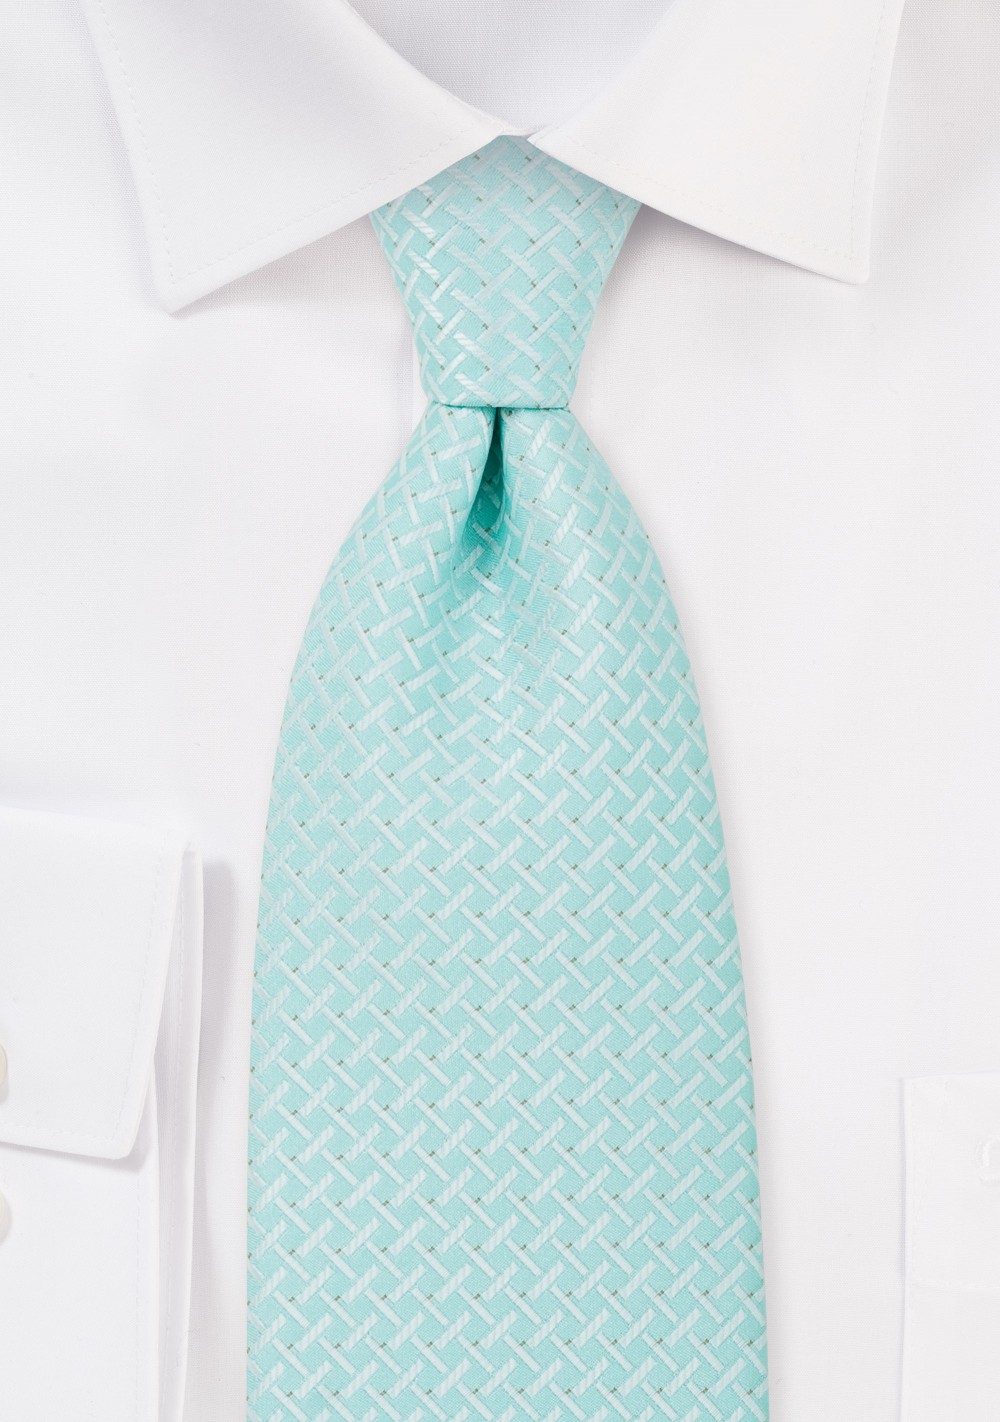 Light Cyan Blue Tie in XL Length